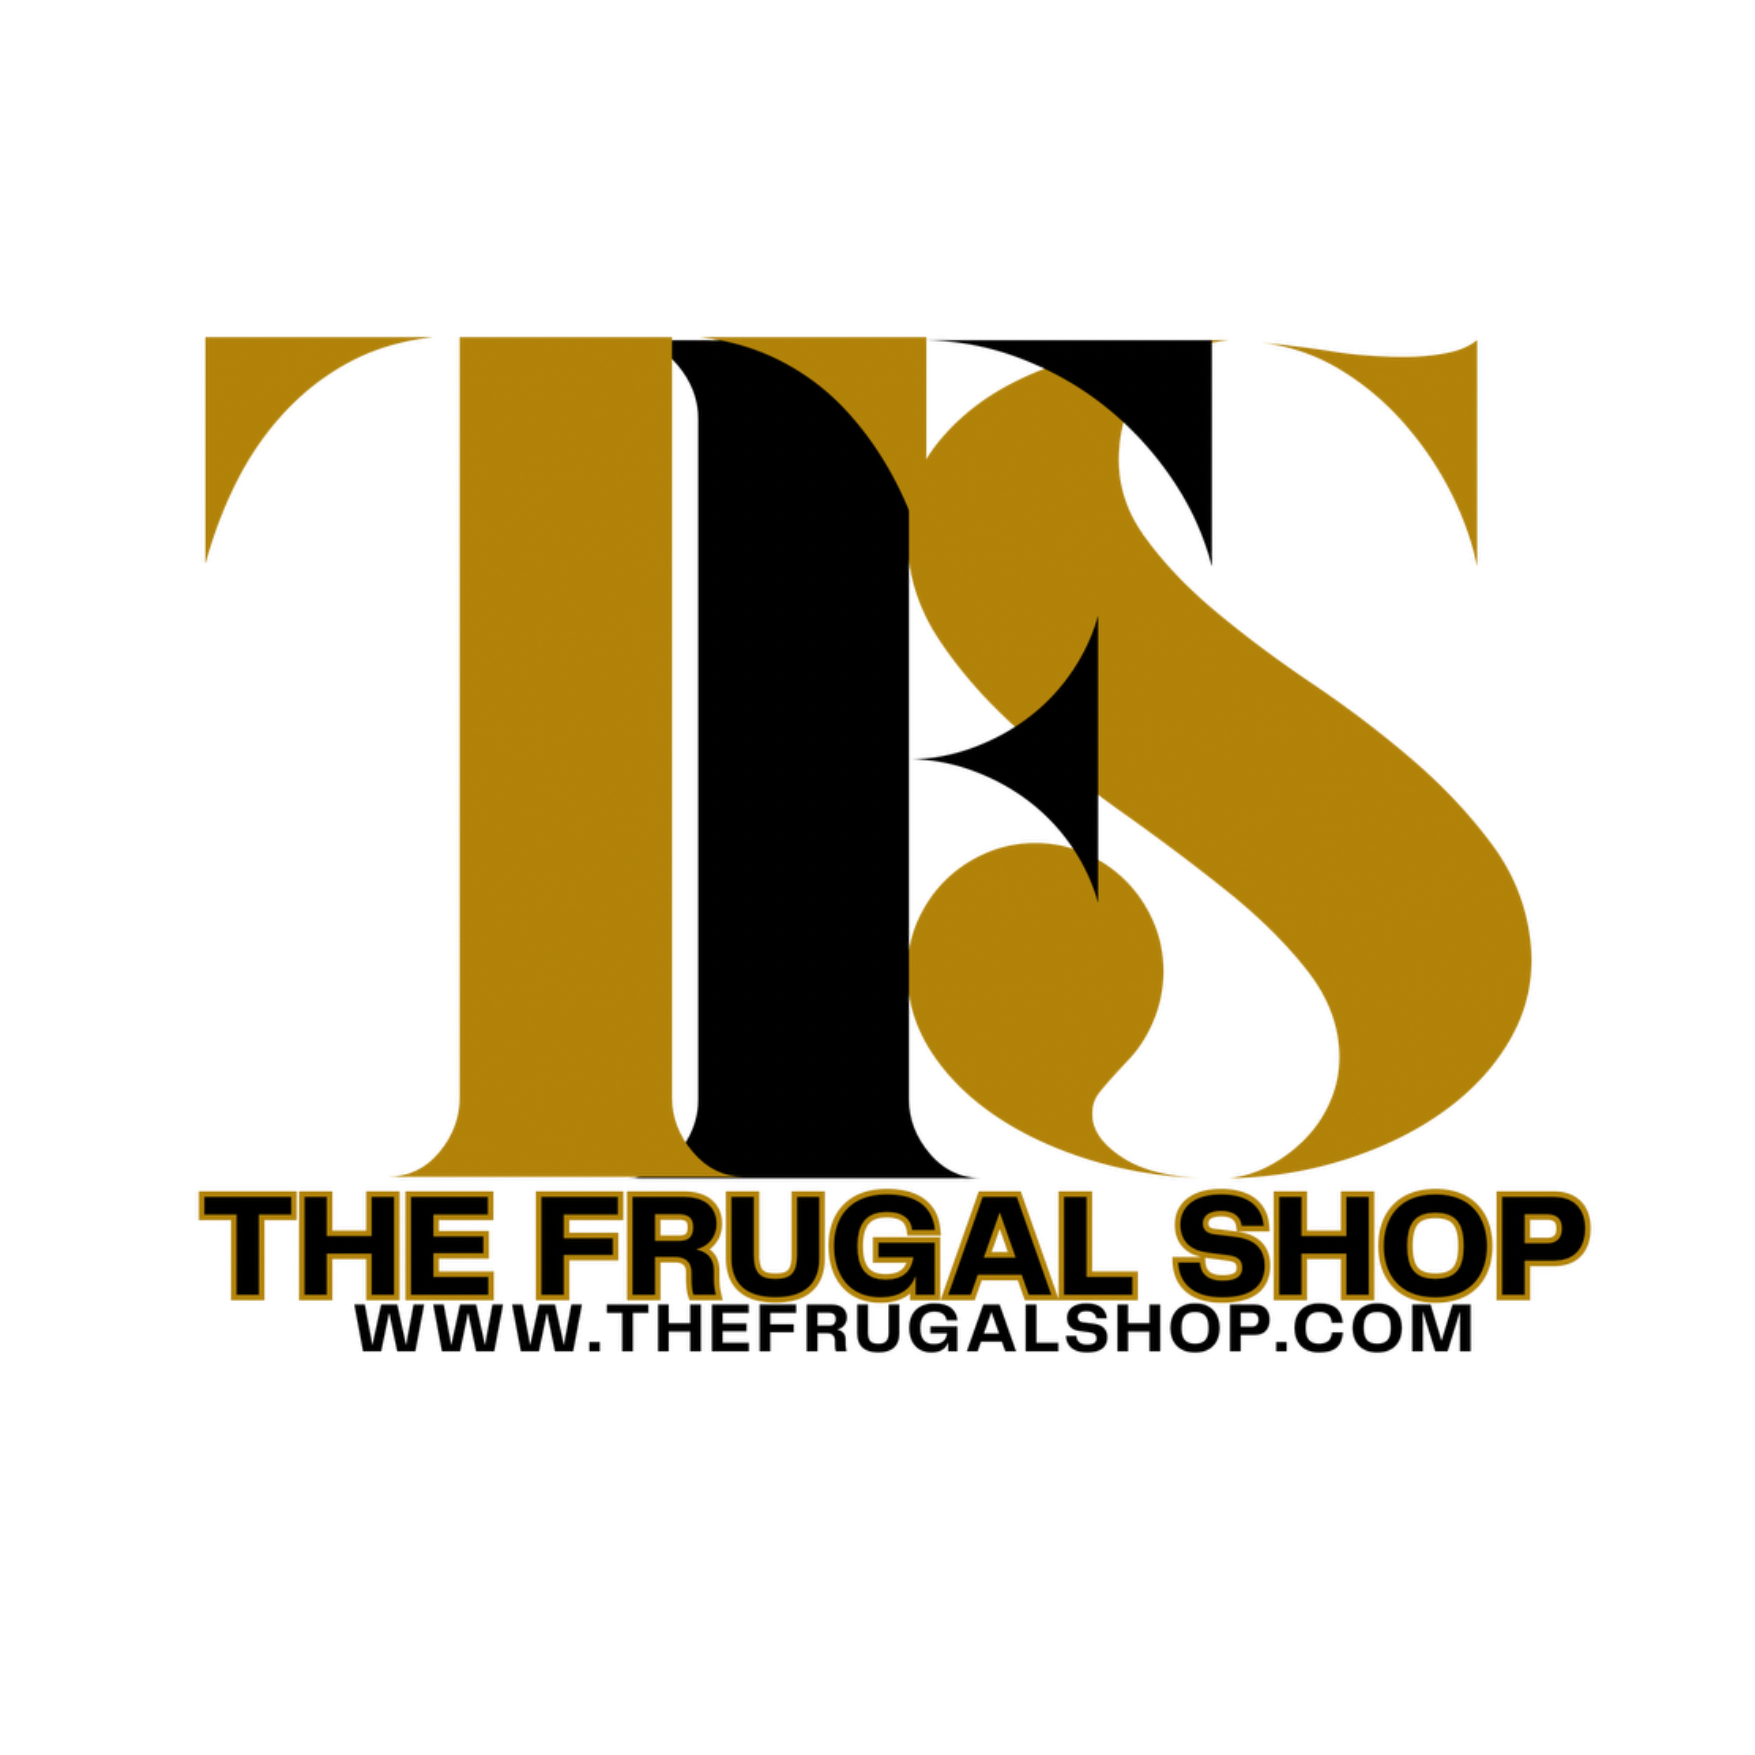 The Frugal Shop LLC